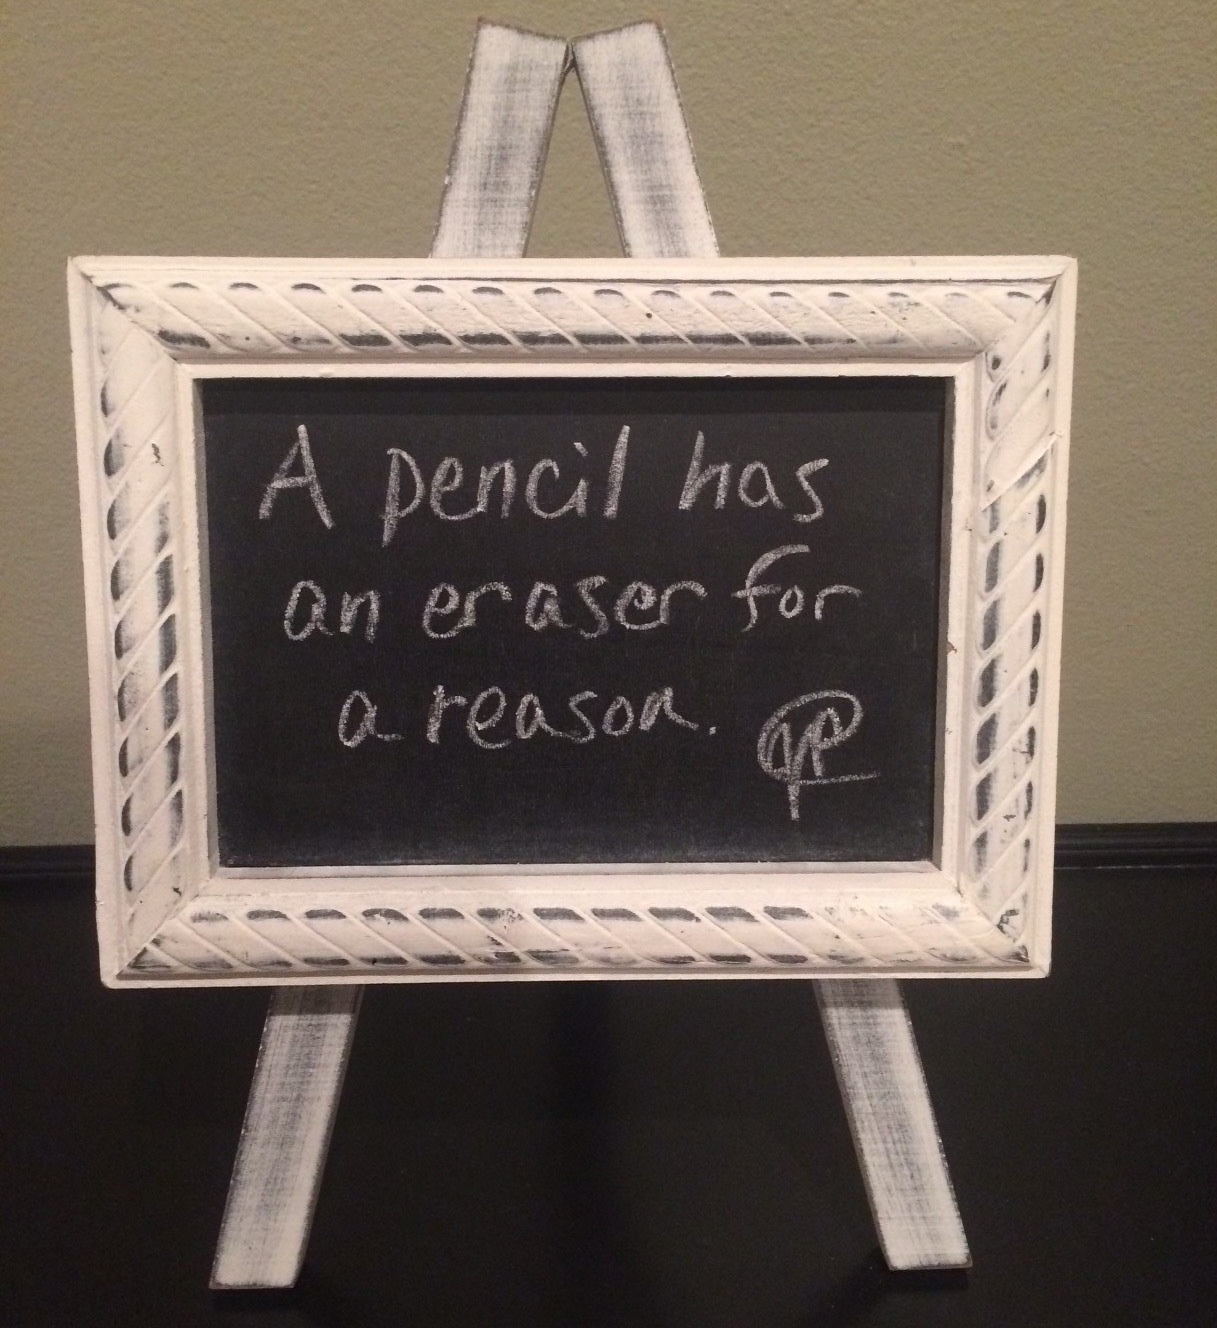 A pencil has an eraser for a reason